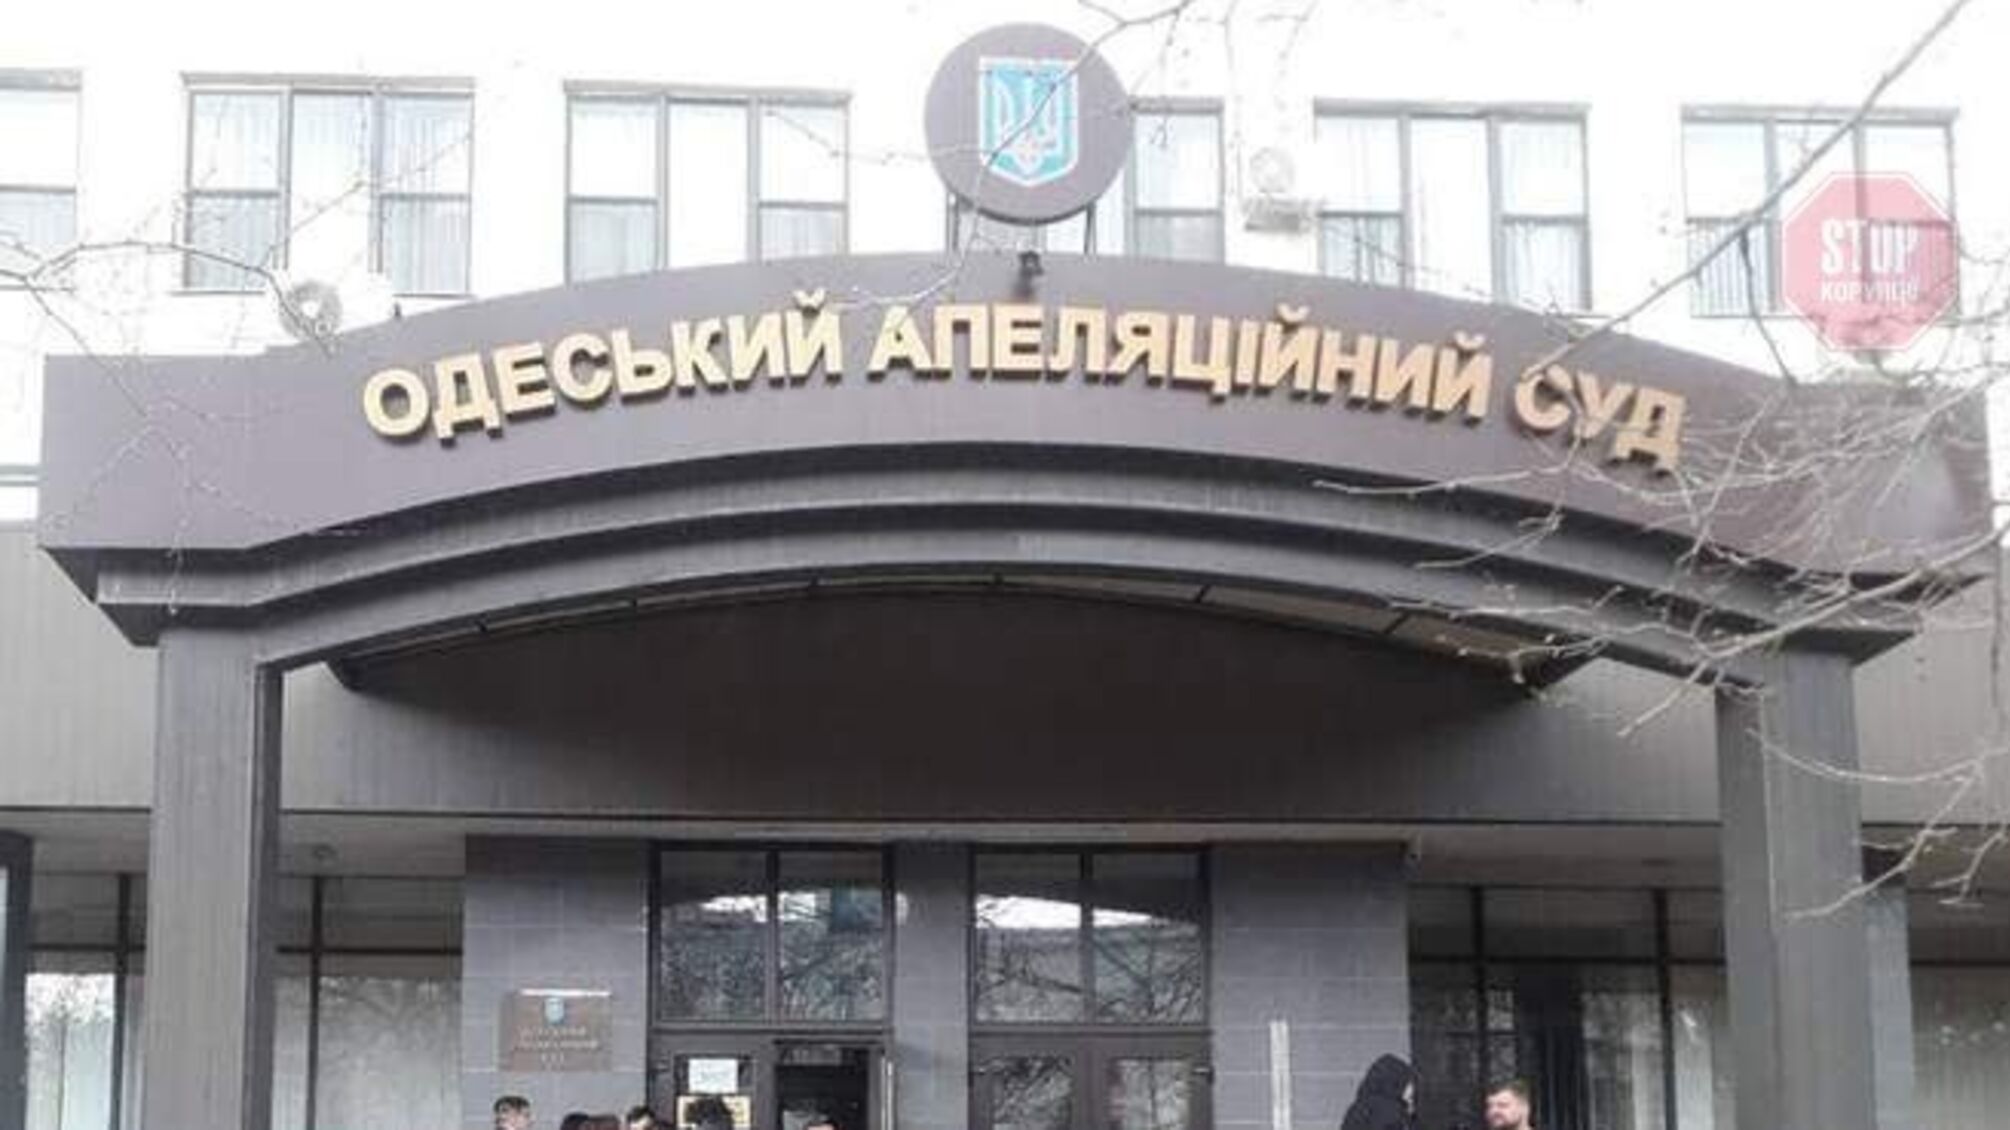 НАБУ: В Одесском апелляционном суде проводят обыски